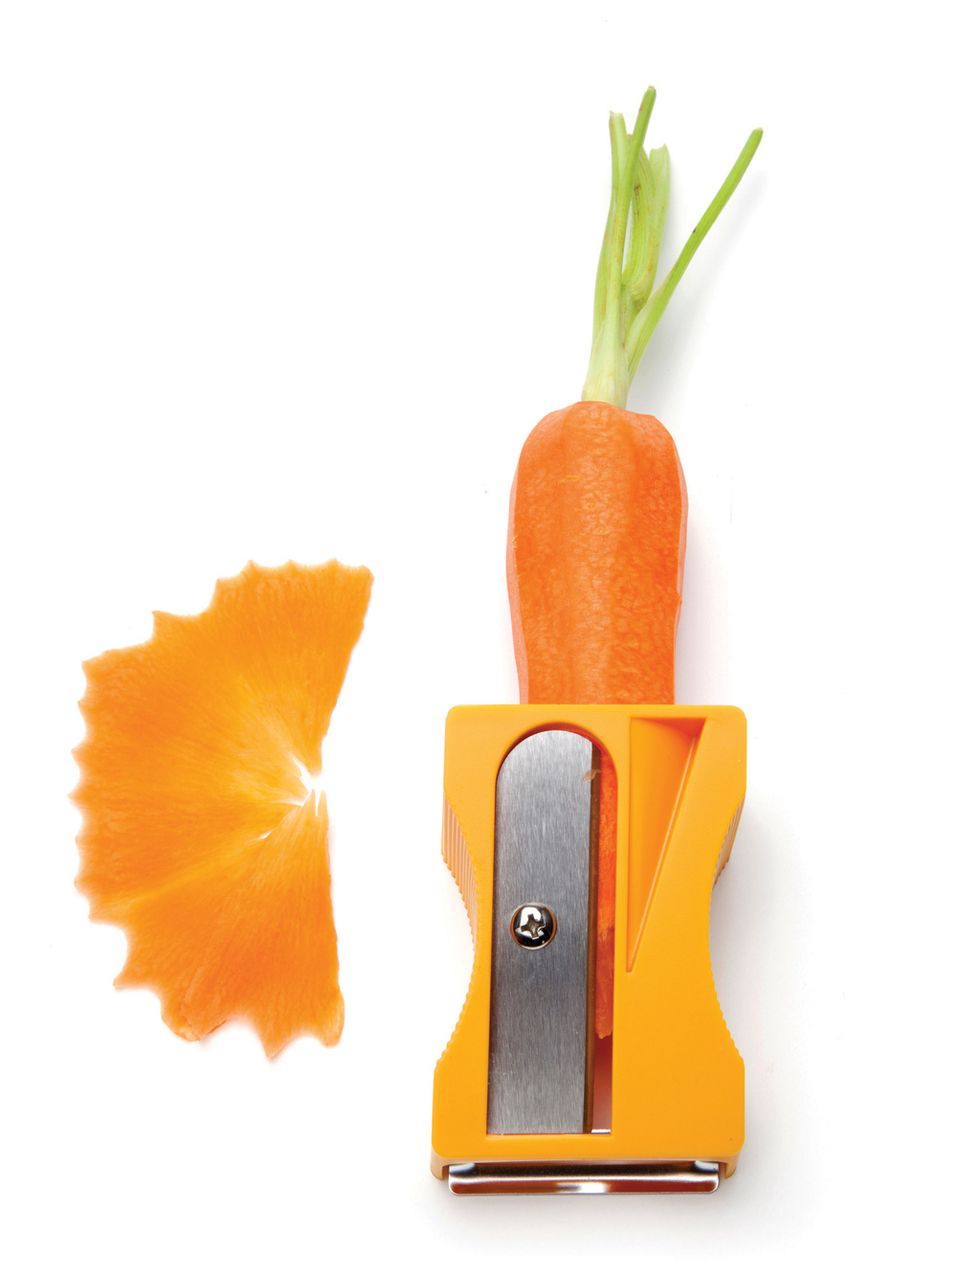 <p>Este utensilio es perfecto para los que le sacan punta a todo, hasta a las verduras. Zanahorias, pepinos, calabacines, berenjenas,... tú escoges lo que quieres afilar y este sacapuntas hace el trabajo. Finas láminas para añadir a la ensalada, para meter en un wok o para comer como crudité. En <a href="http://www.alambique.com/es/tienda/utensilios/pequena-herramienta-para-fruta-y-verdura/sacapuntas-karoto-3123?search_query=sacapuntas&amp;results=4" target="_blank">El Alambique</a> lo tienen por 13,95 €.</p>